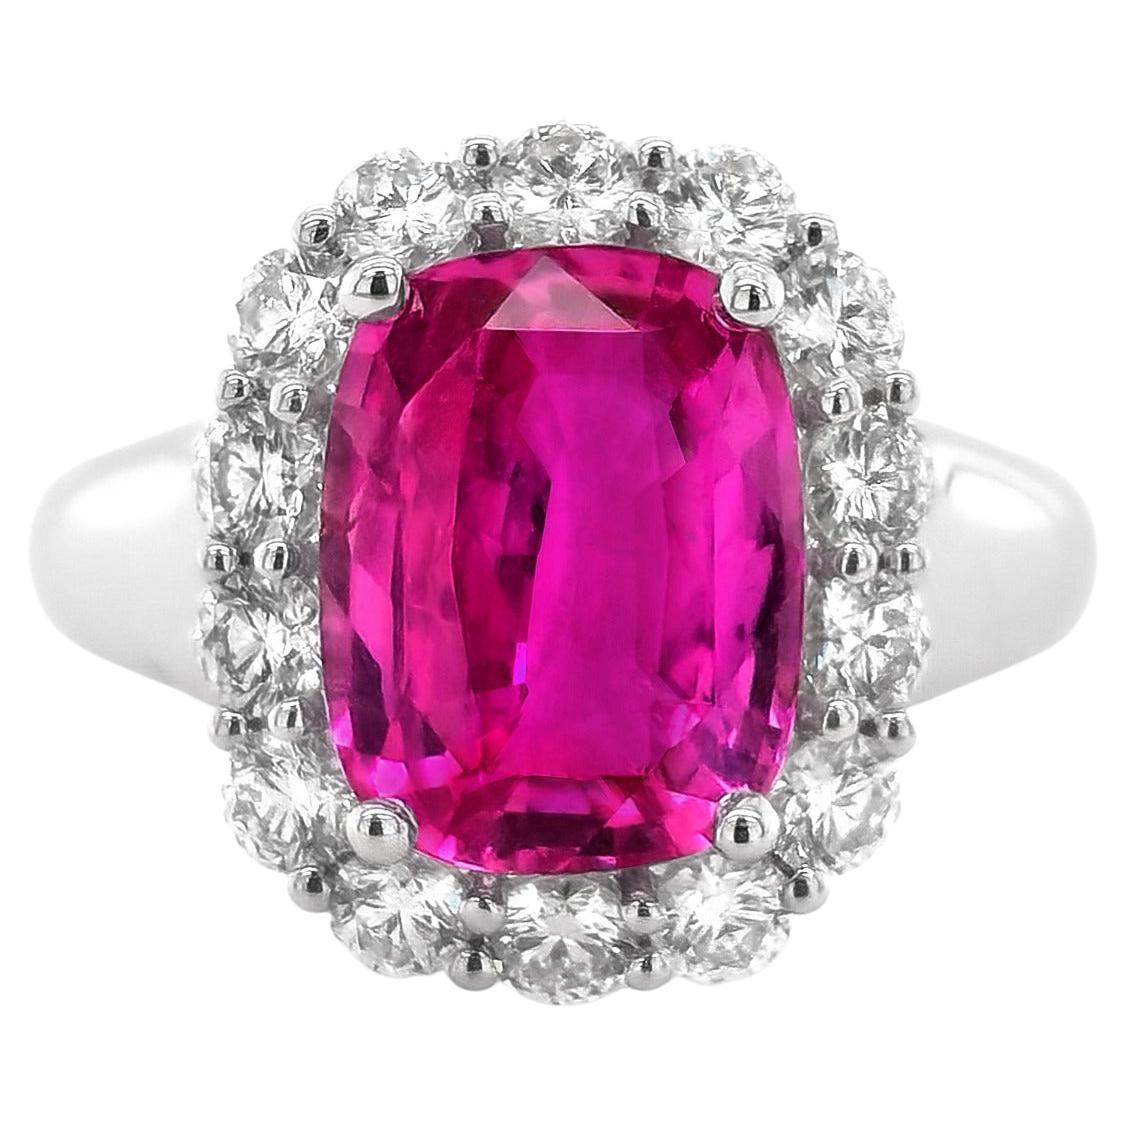 GIA Certified 4.54 Carat Madagascar Pink Sapphire Diamond 18k White Gold Ring